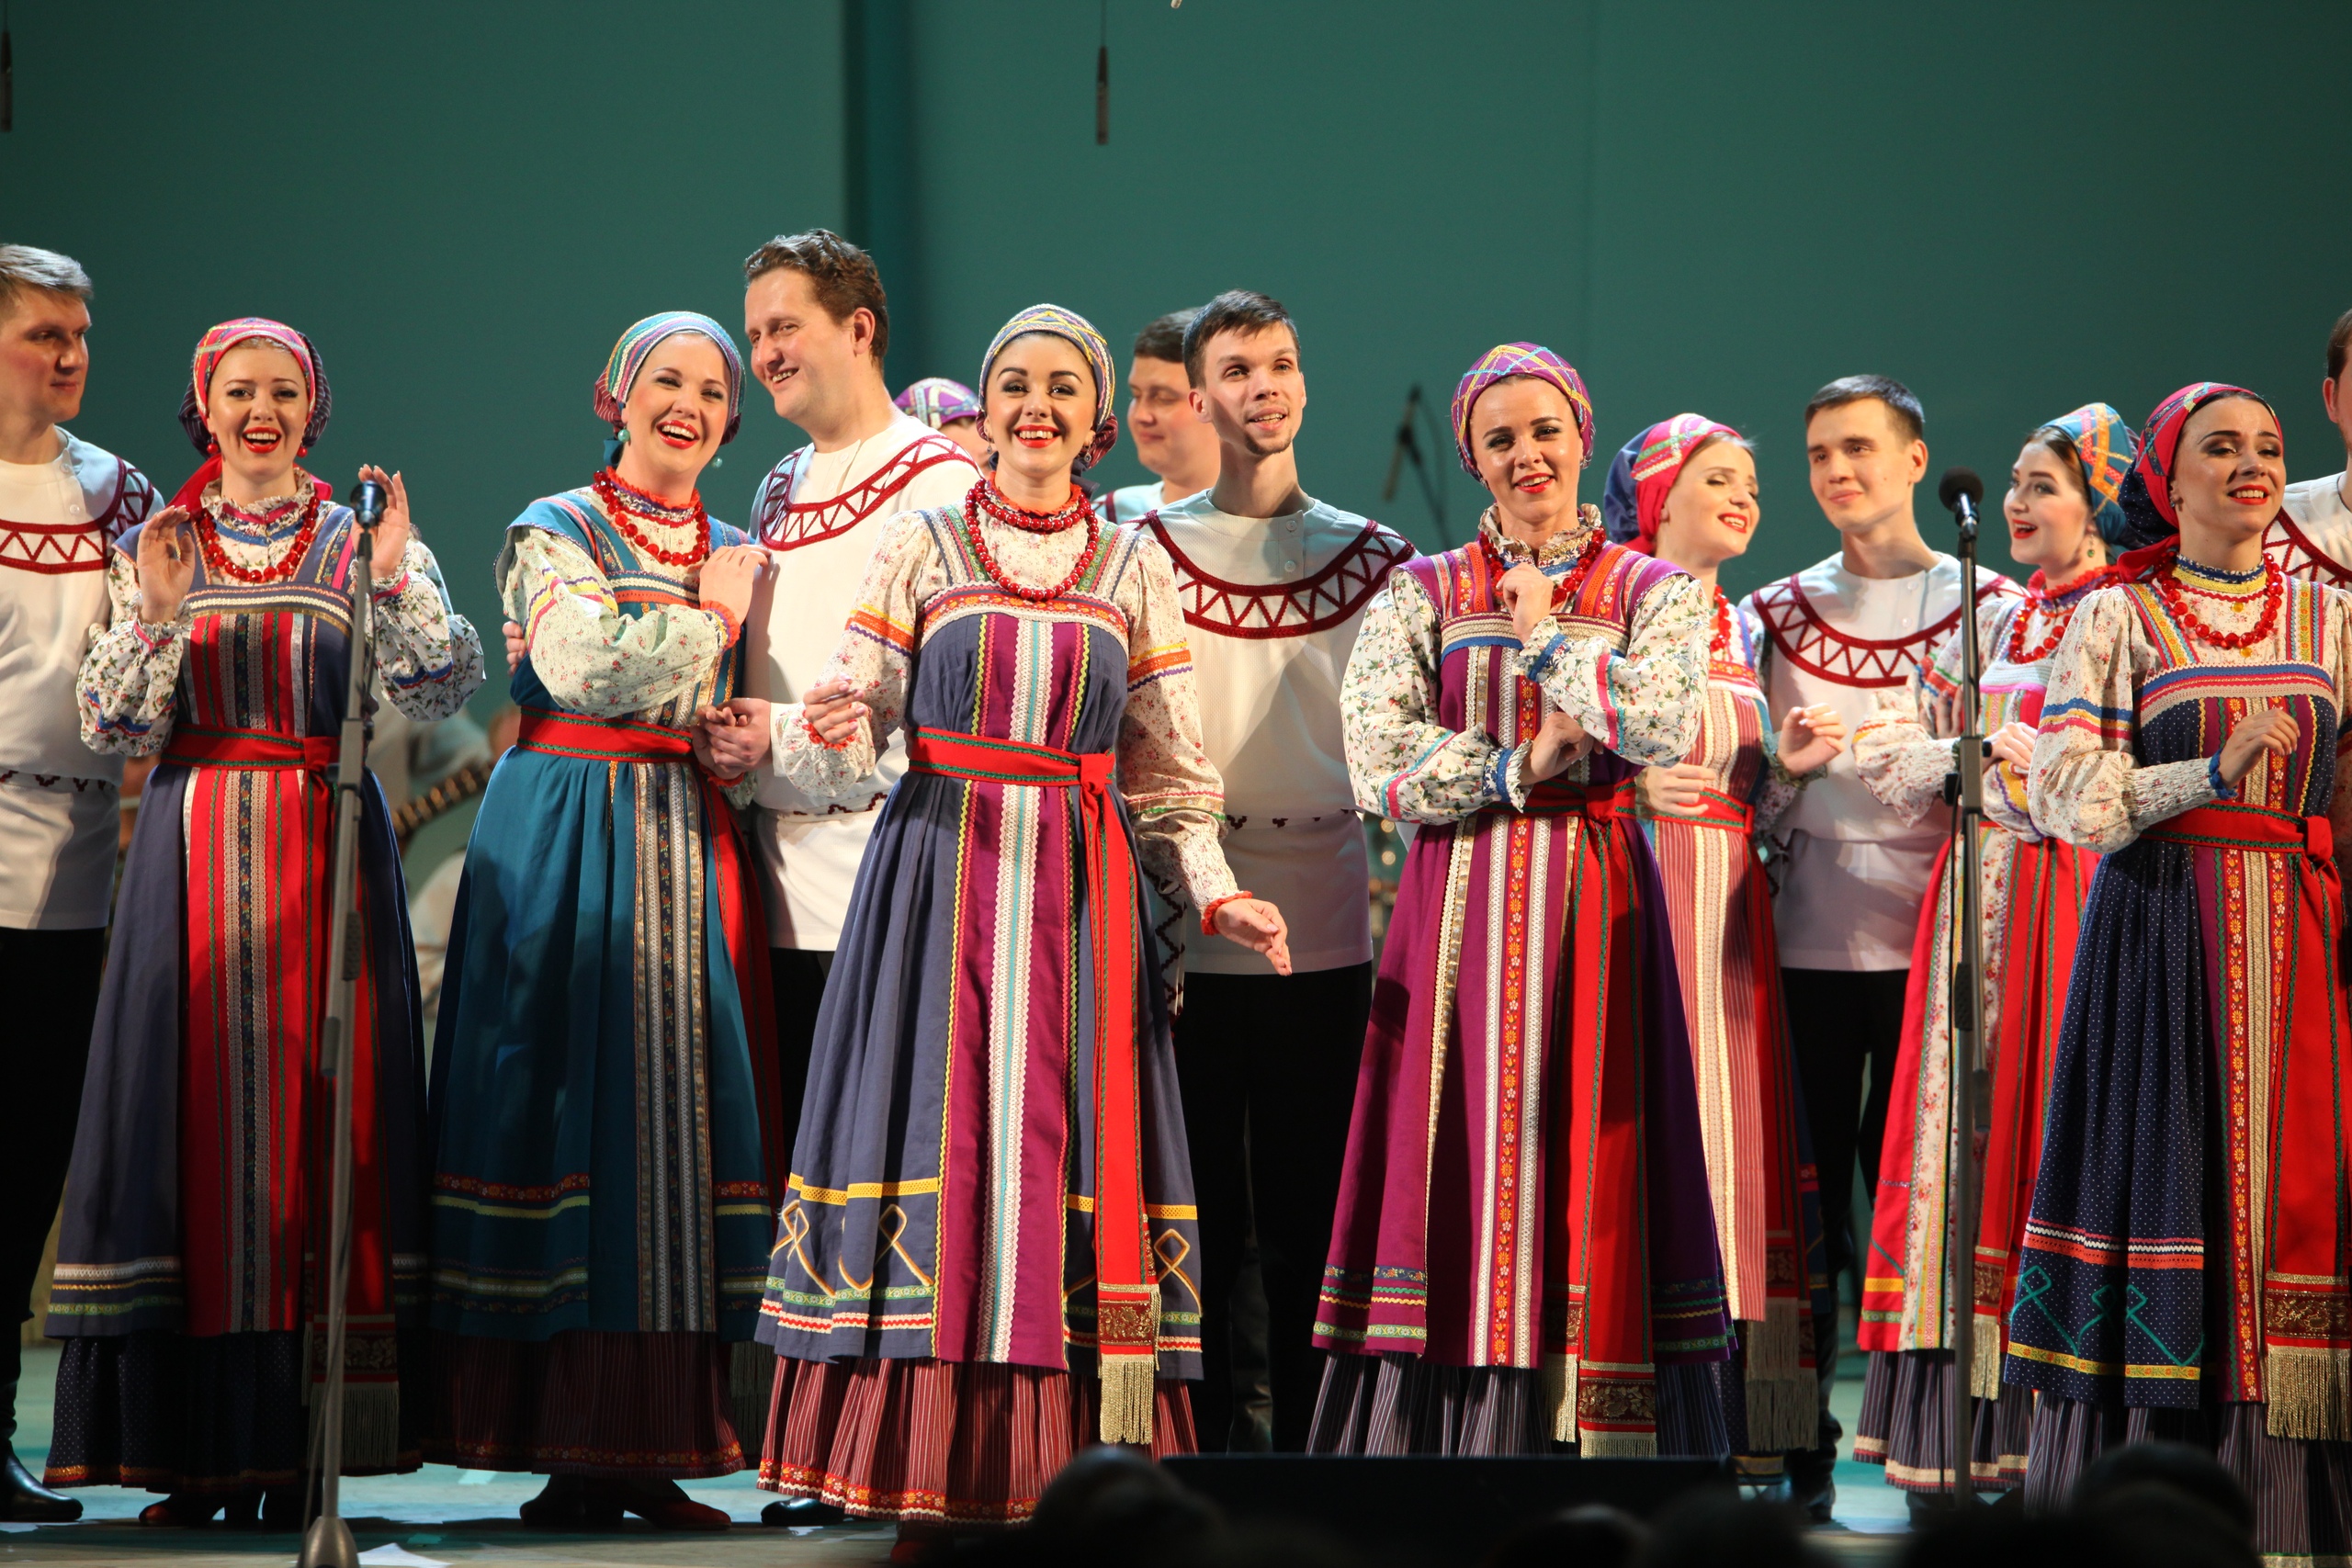 Выиграйте пригласительные на рождественский концерт Уральского государственного академического русского народного хора!